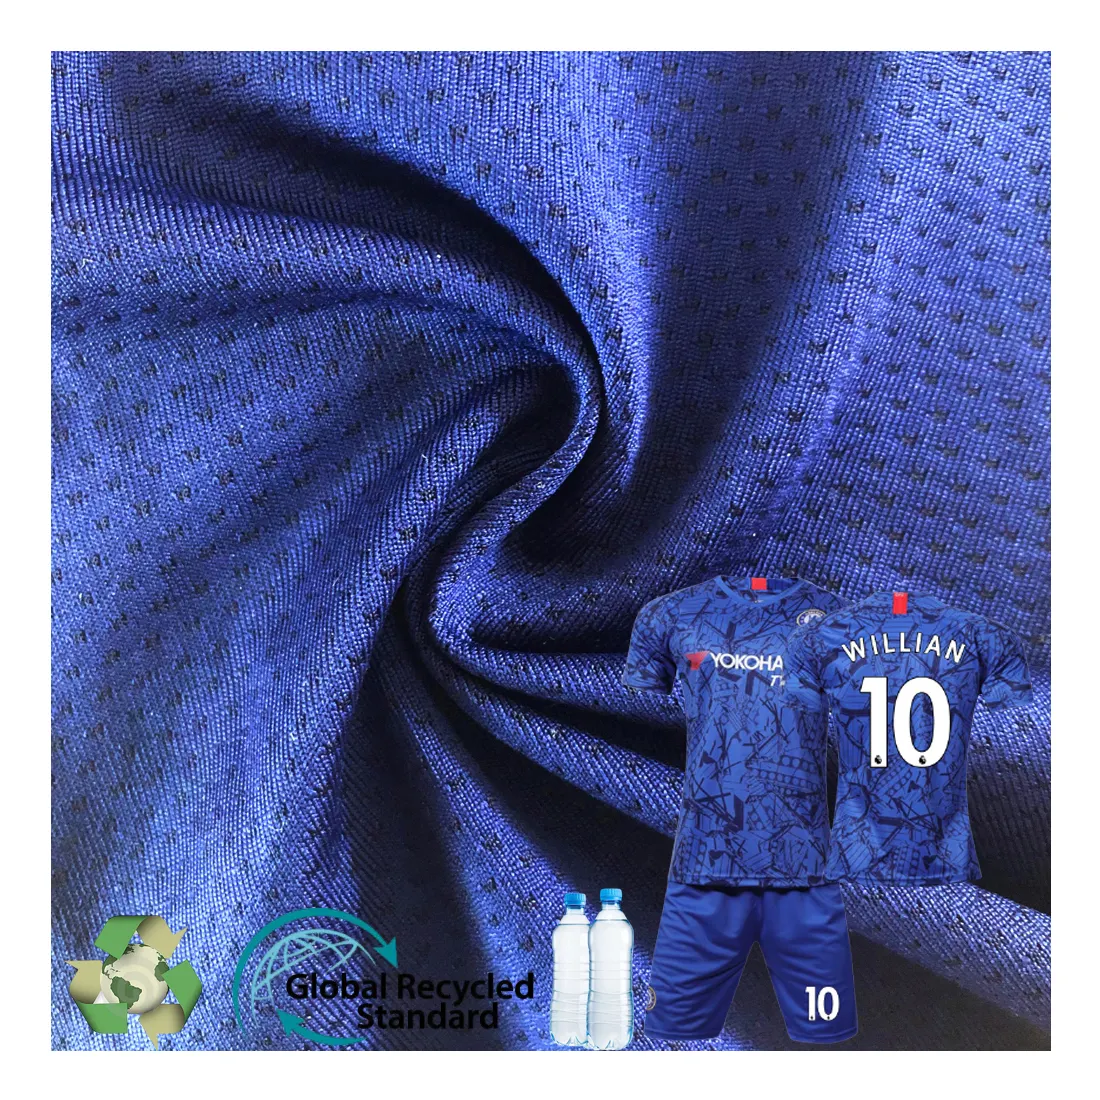 Camisa tecido de malha para futebol, tecido têxtil de poliéster, seco, estampa de subolmação, elástico, respirável, macio, esportivo